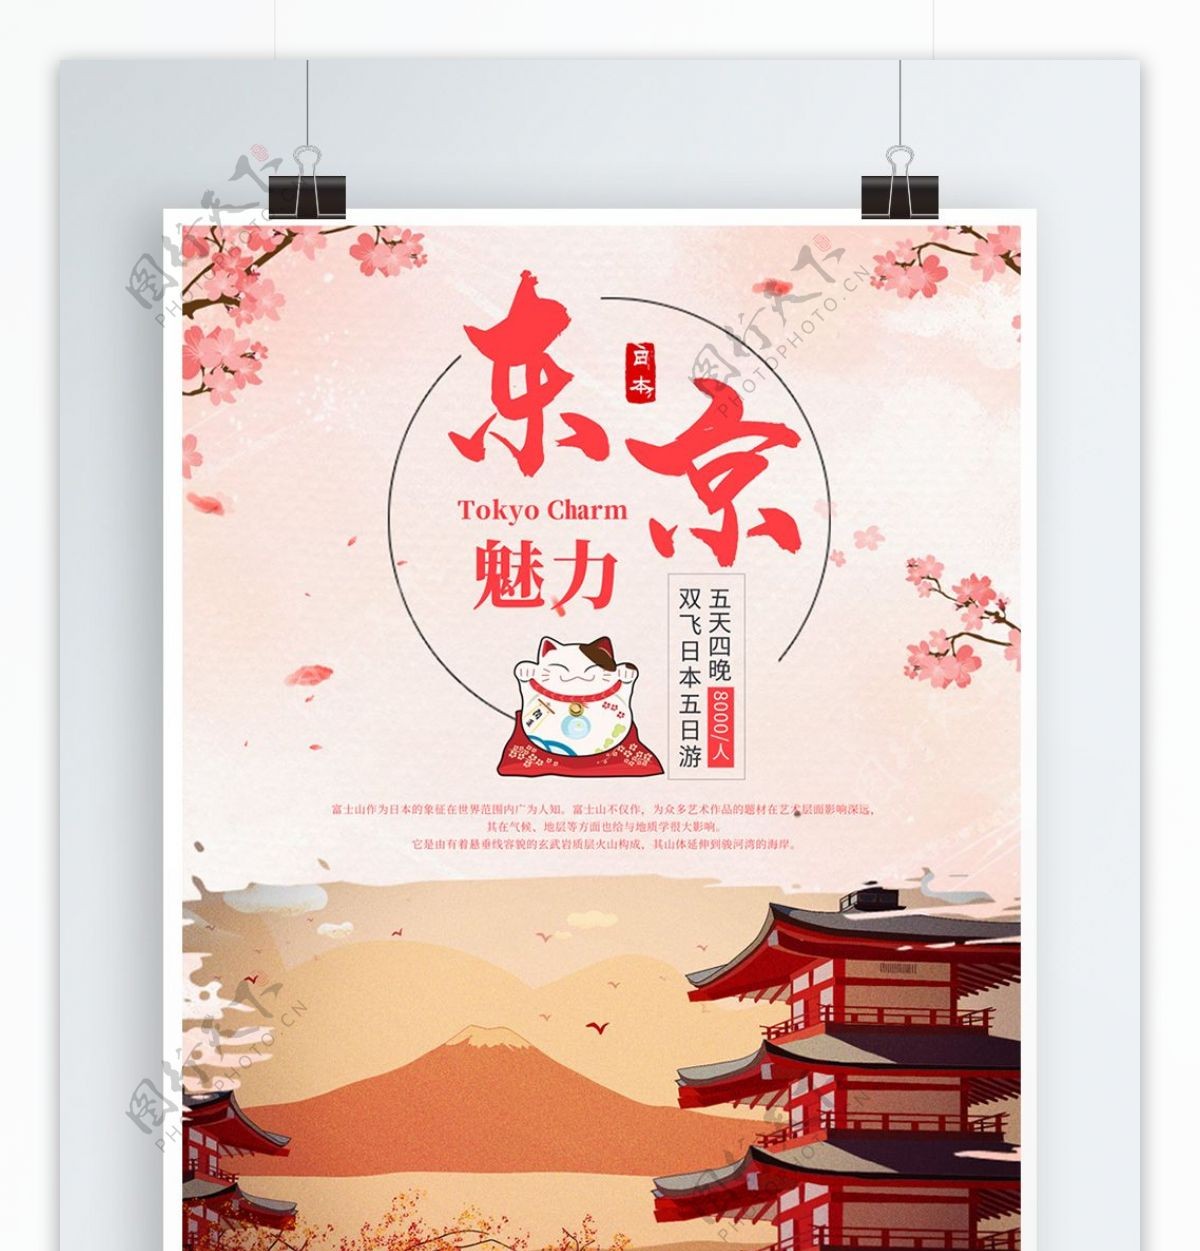 原创日本东京富士山樱花旅游团海报宣传